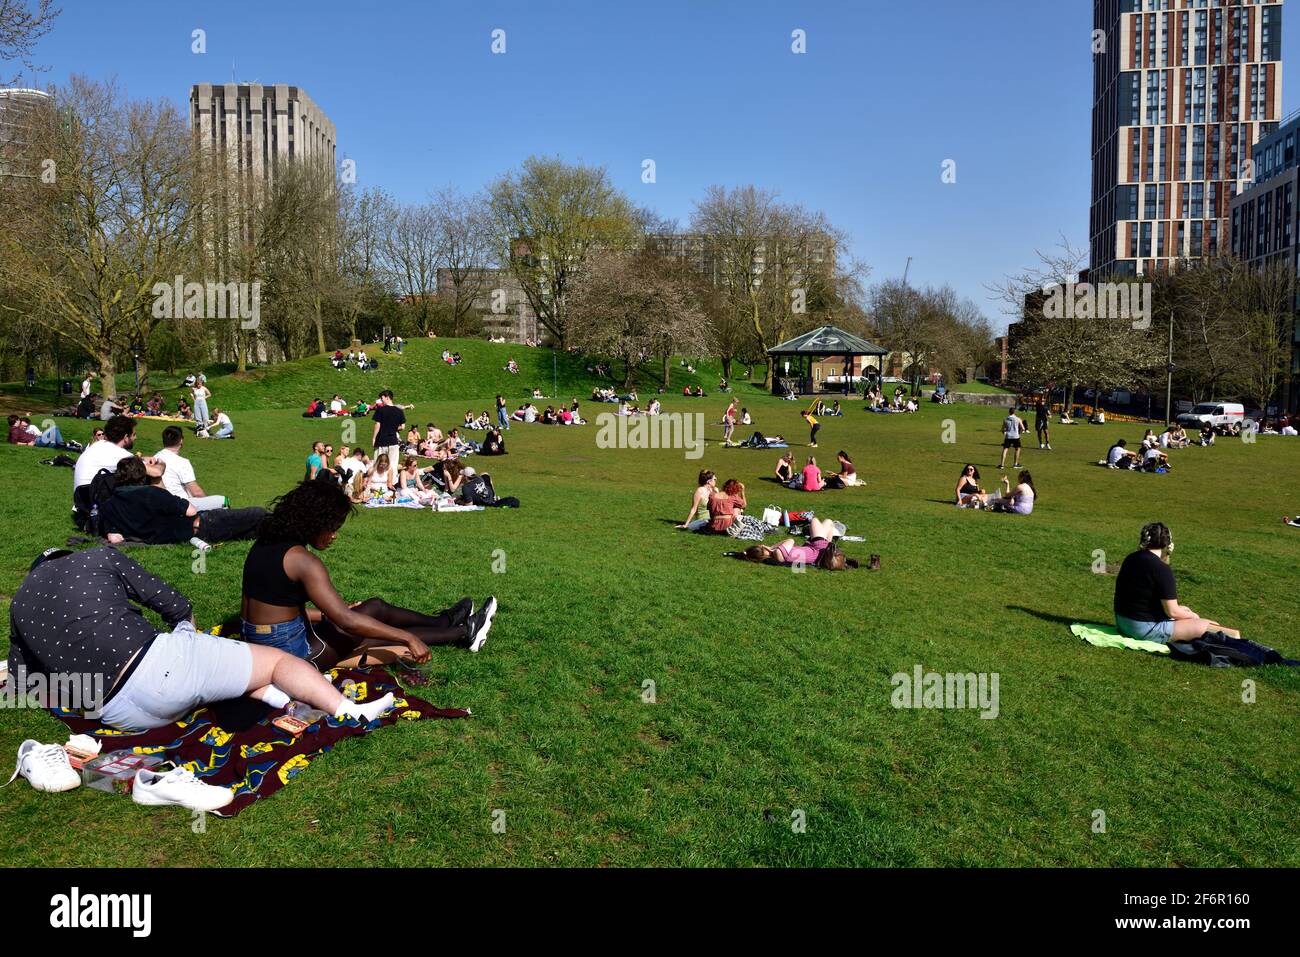 Groupes de personnes profitant du soleil dans le parc du château de Bristol après le verrouillage du coronavirus Banque D'Images